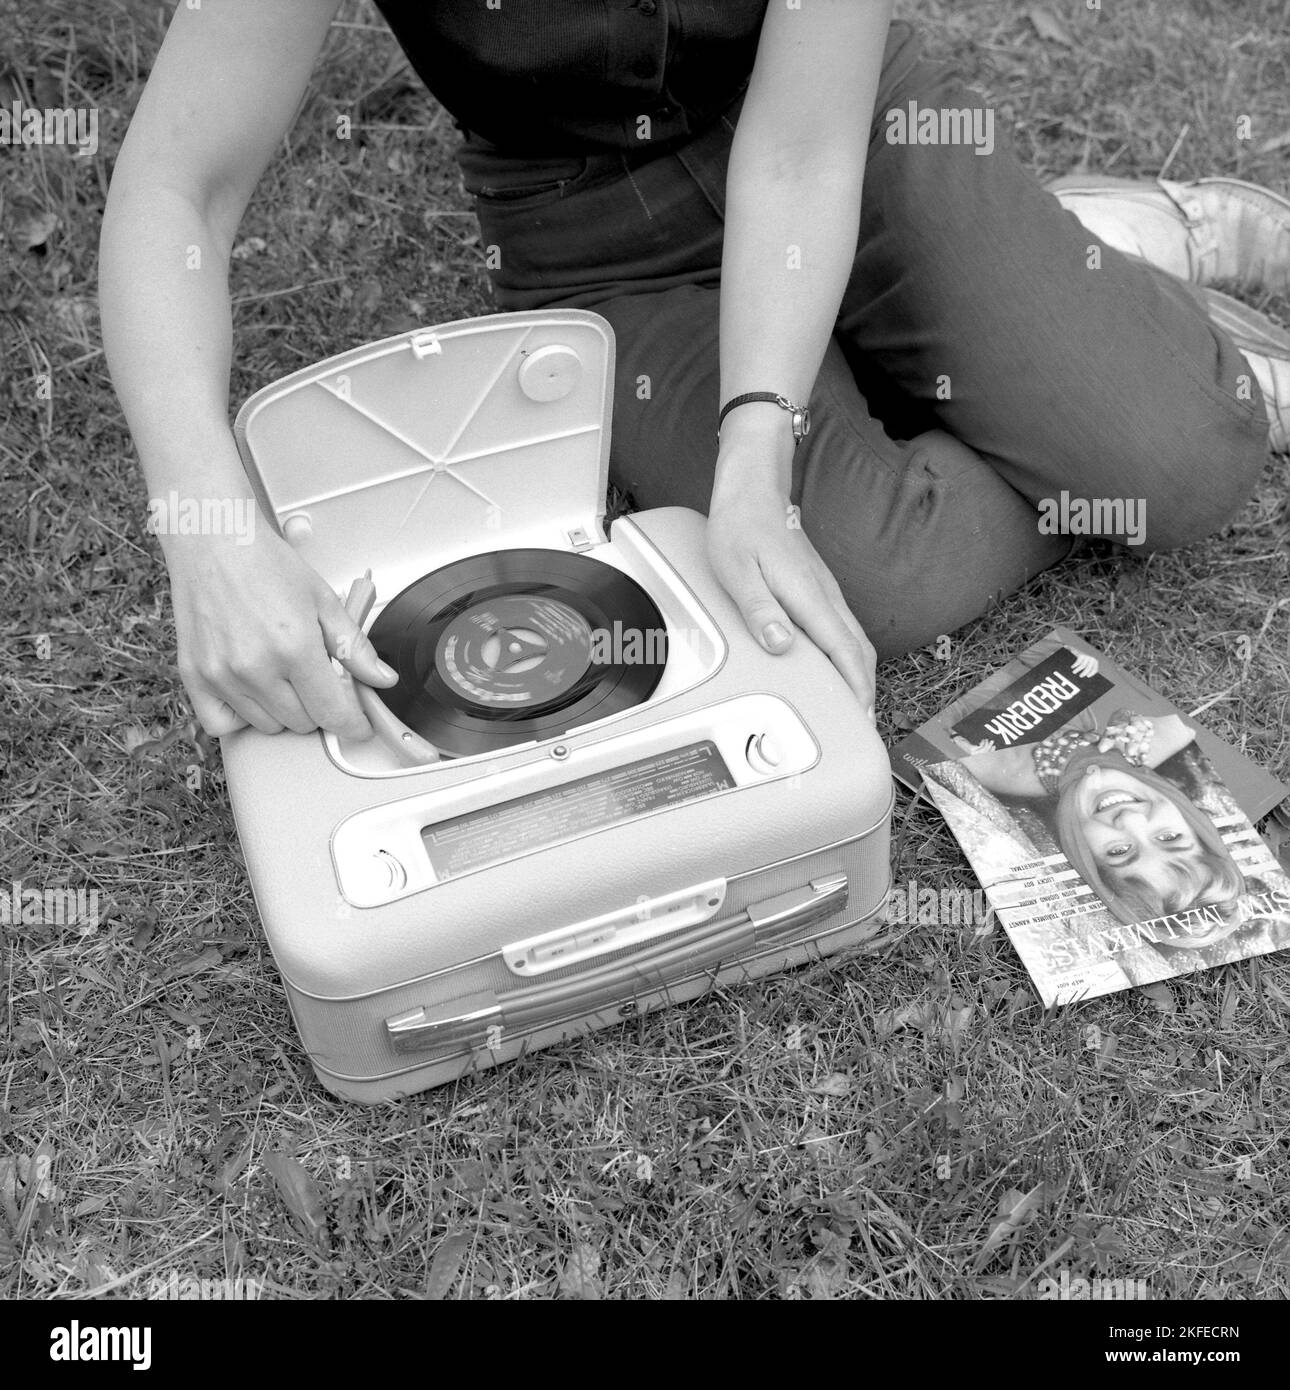 Come appariva negli anni '1960s una radio portatile combinata e un lettore di dischi. Un giocatore di grammofono come guardava in questo momento. Questo modello è stato alimentato a batteria e potrebbe giocare singoli, 7 pollici 45 giri/min dischi in vinile. È anche possibile ascoltare la radio sulla sua funzione radio, ruotando le manopole sulla frequenza e la stazione che si desidera ascoltare. Un pratico coperchio si vede aperto e quando non si usa il grammofono lo si chiude. Svezia 1960 Conard Ref 4264 Foto Stock